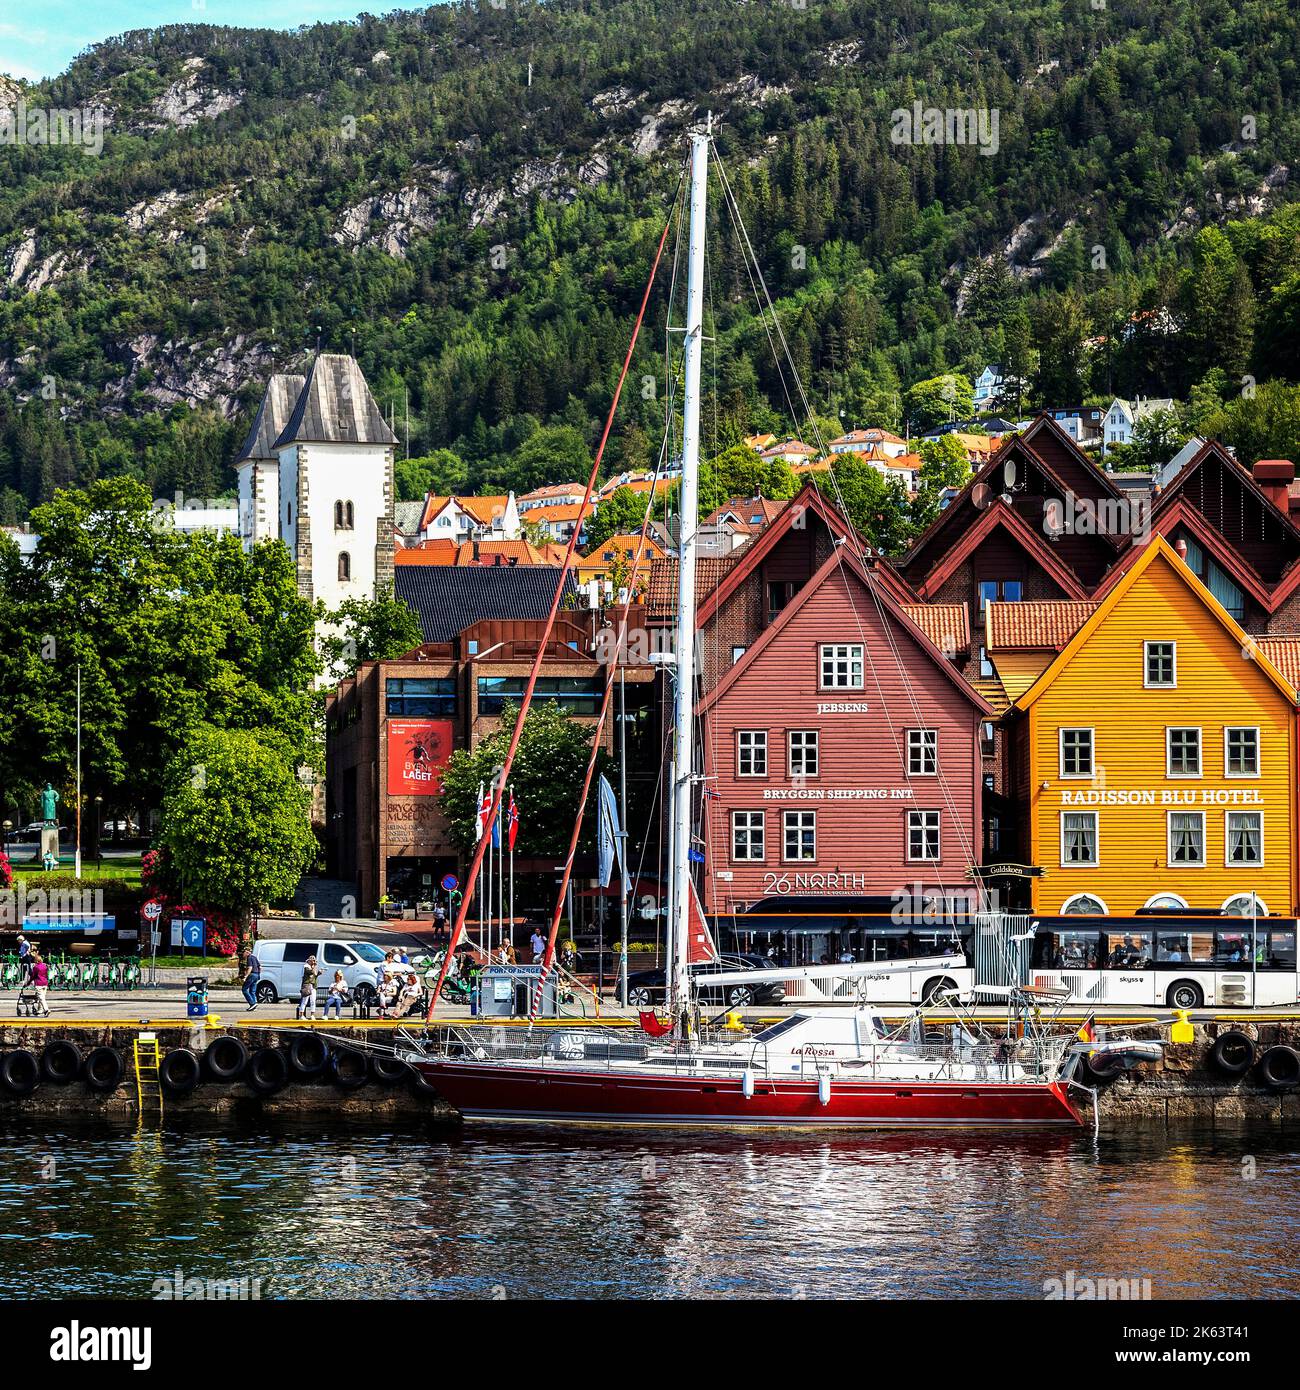 Das deutsche Segelboot La Rossa liegt am Bryggen Kai, dem UNESCO-Hanseatischen Teil des Hafens von Bergen, Norwegen. Stockfoto